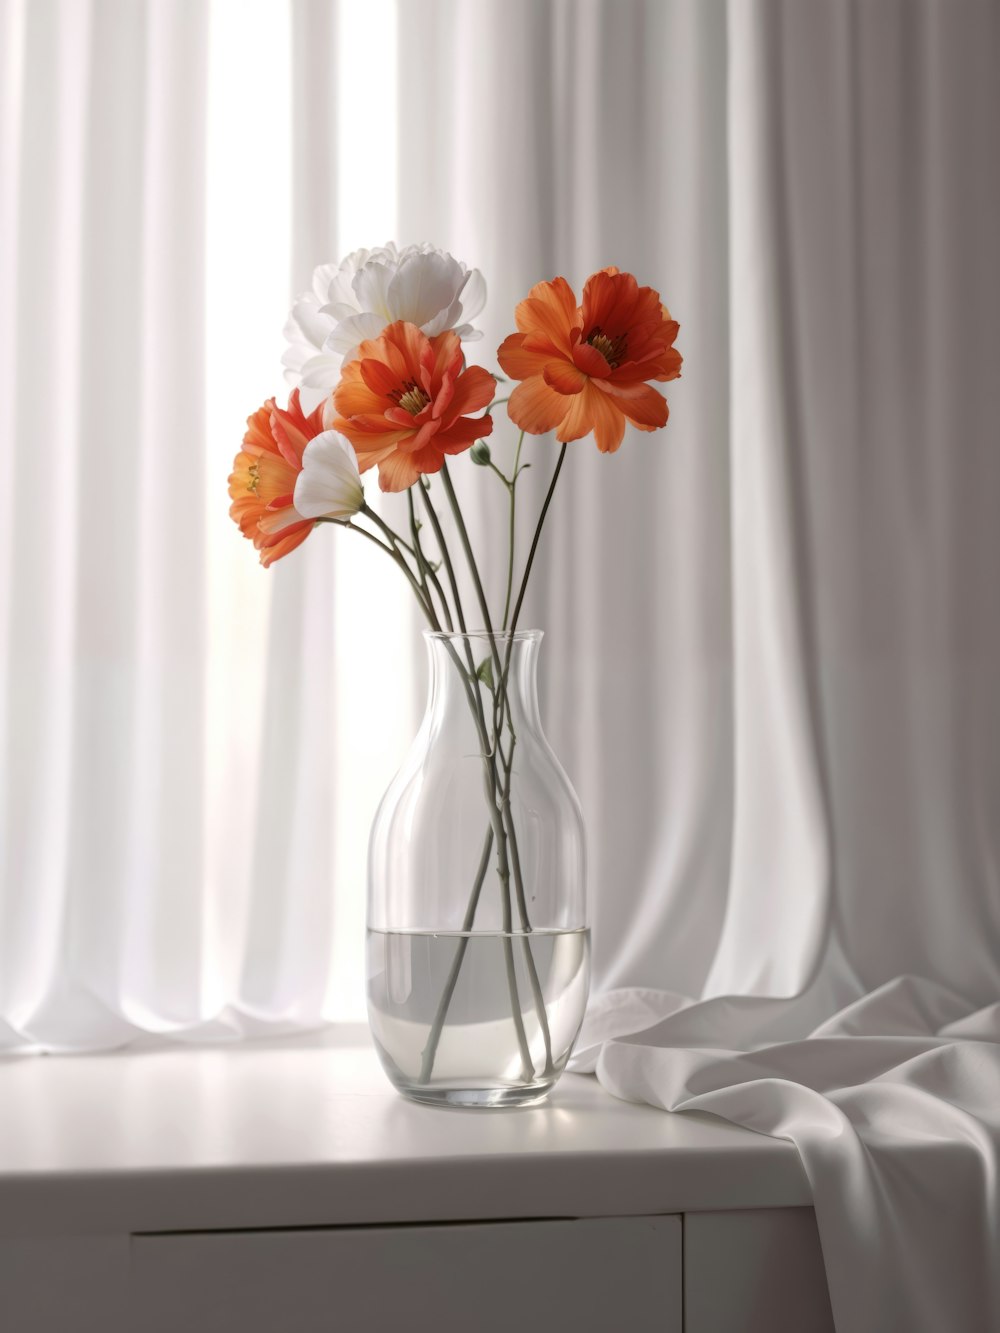 um vaso de vidro cheio de flores laranjas e brancas